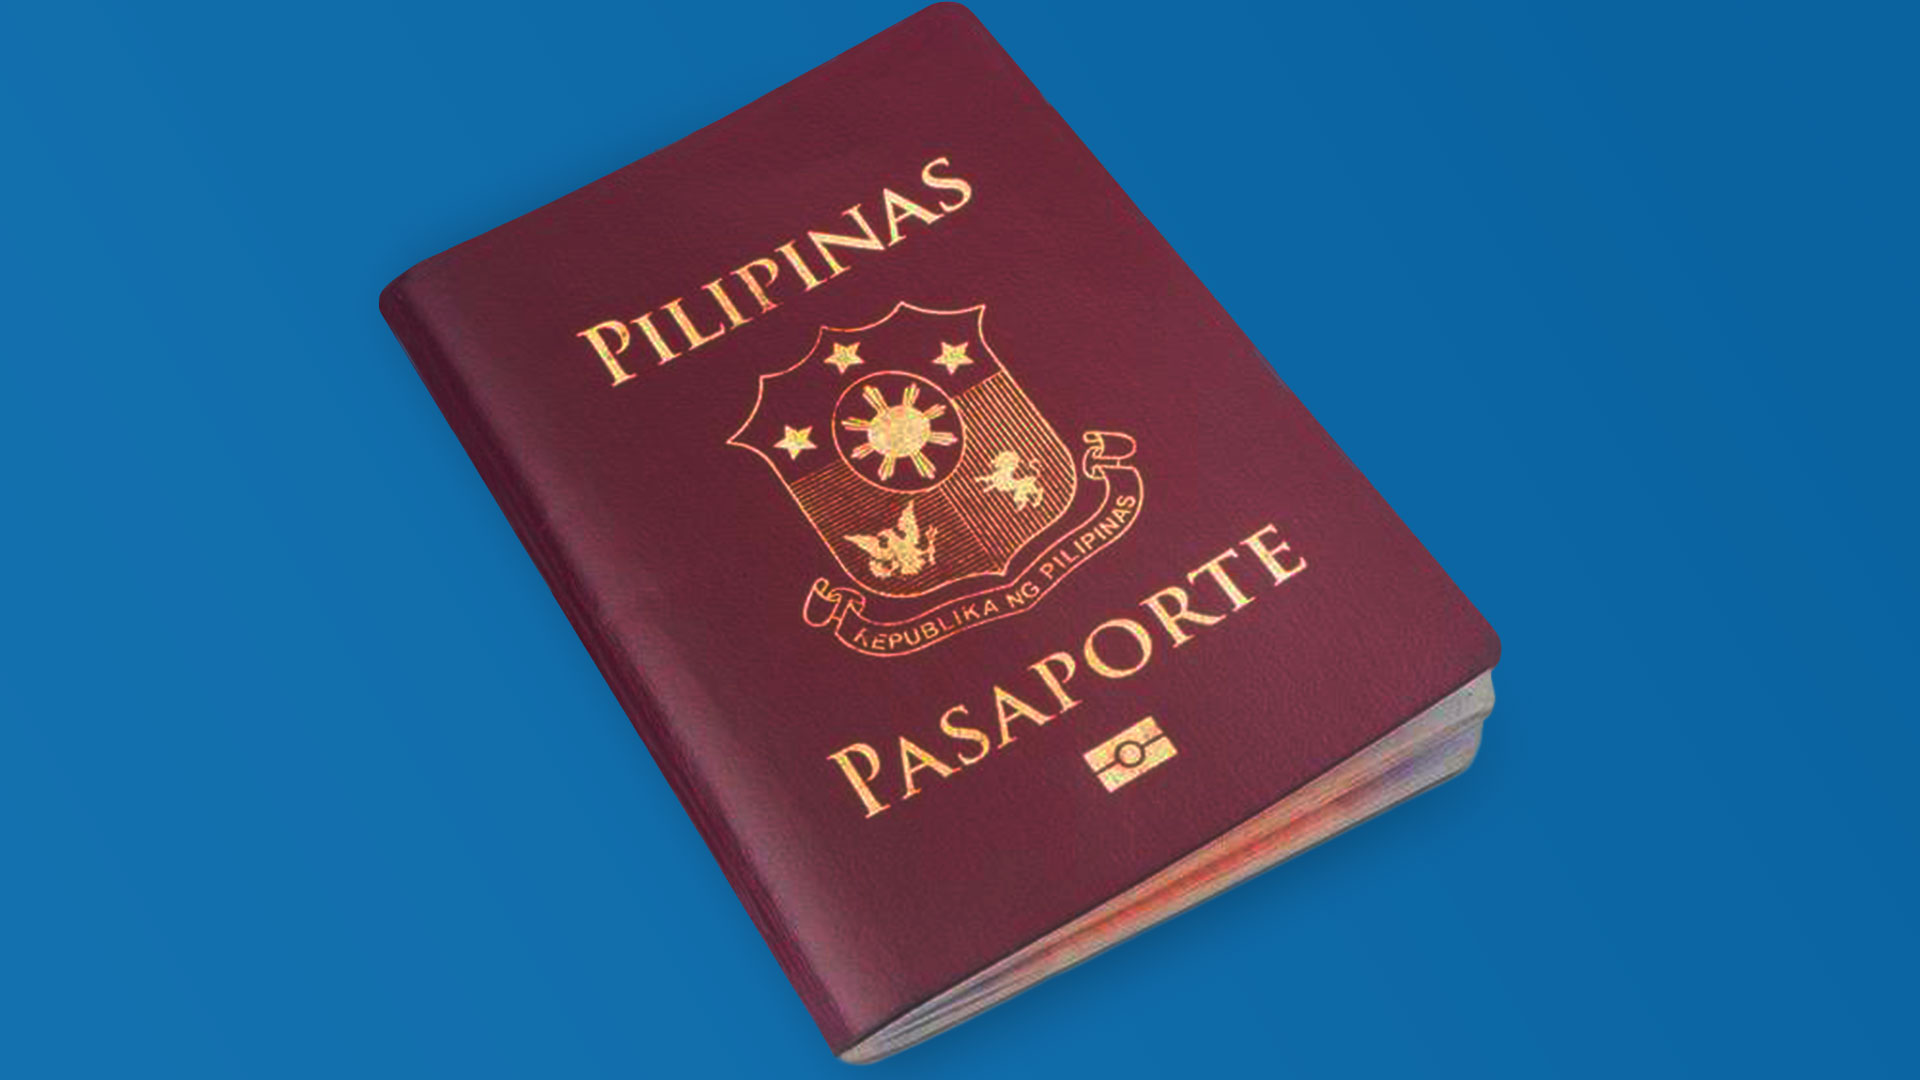 10-year Philippine Passport Validity Begins January 2018